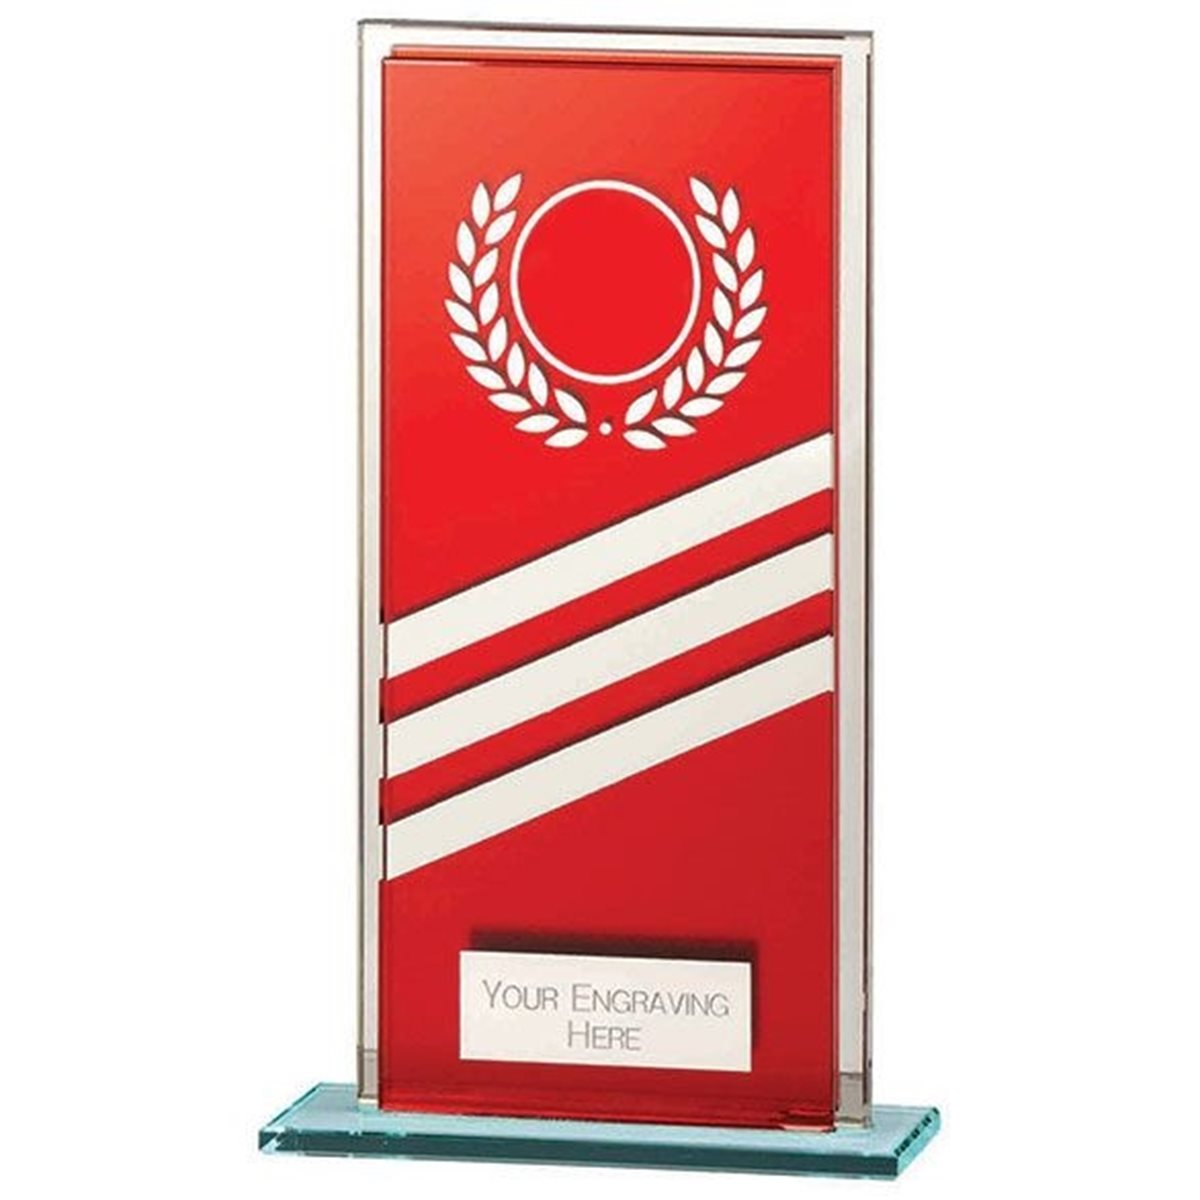 Talisman Mirror Red Glass Award CR22010